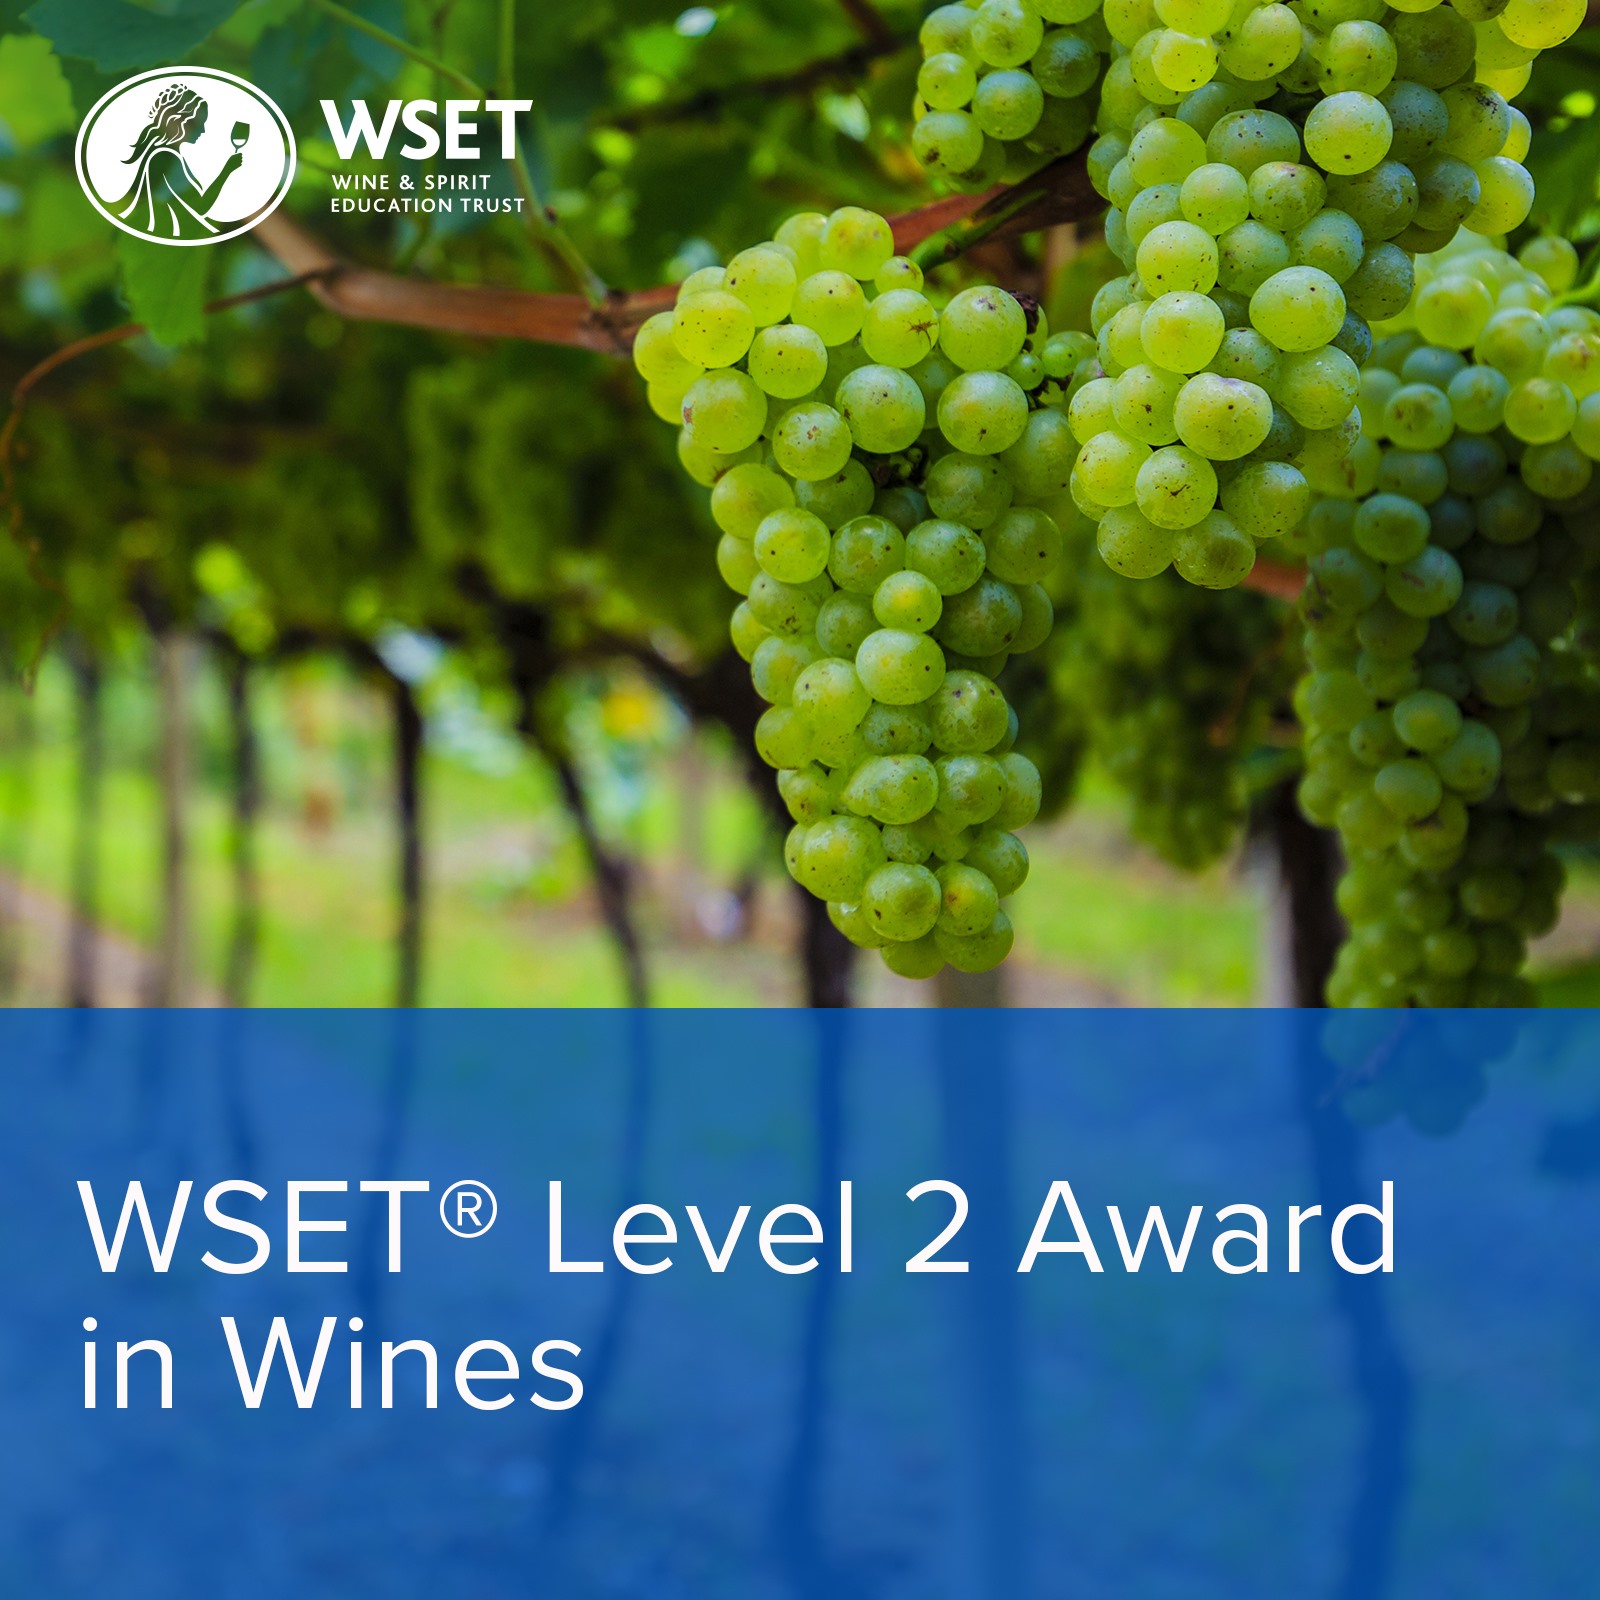 Curs de degustare a vinurilor WSET Level 2 - Bucuresti